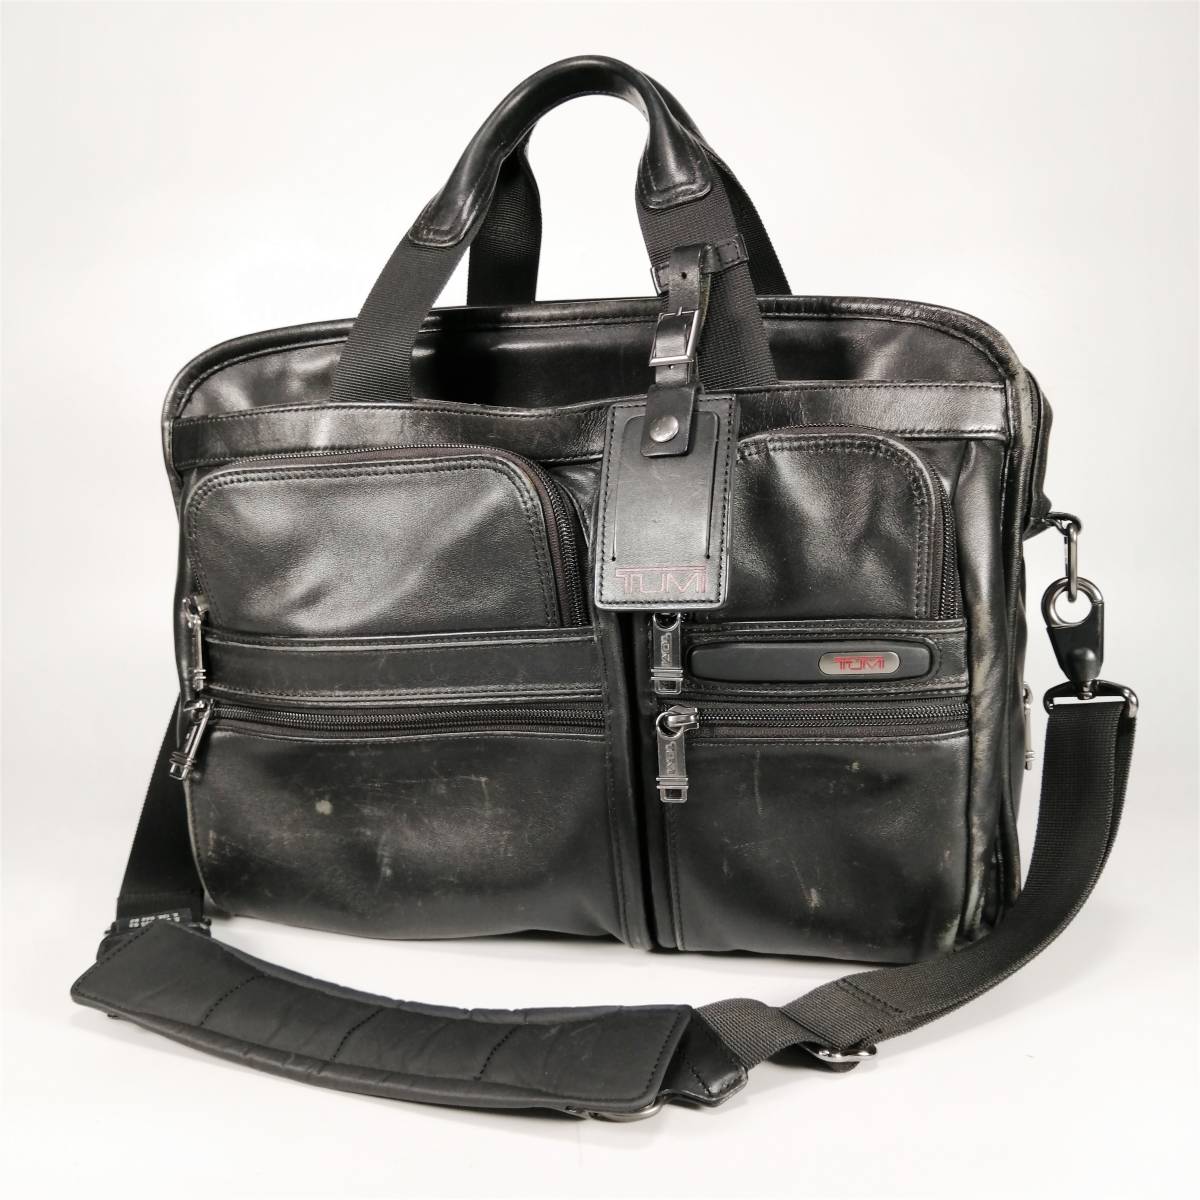 高価値セリー レザー 2WAY トゥミ TUMI ブリーフケース カバン 鞄 黒